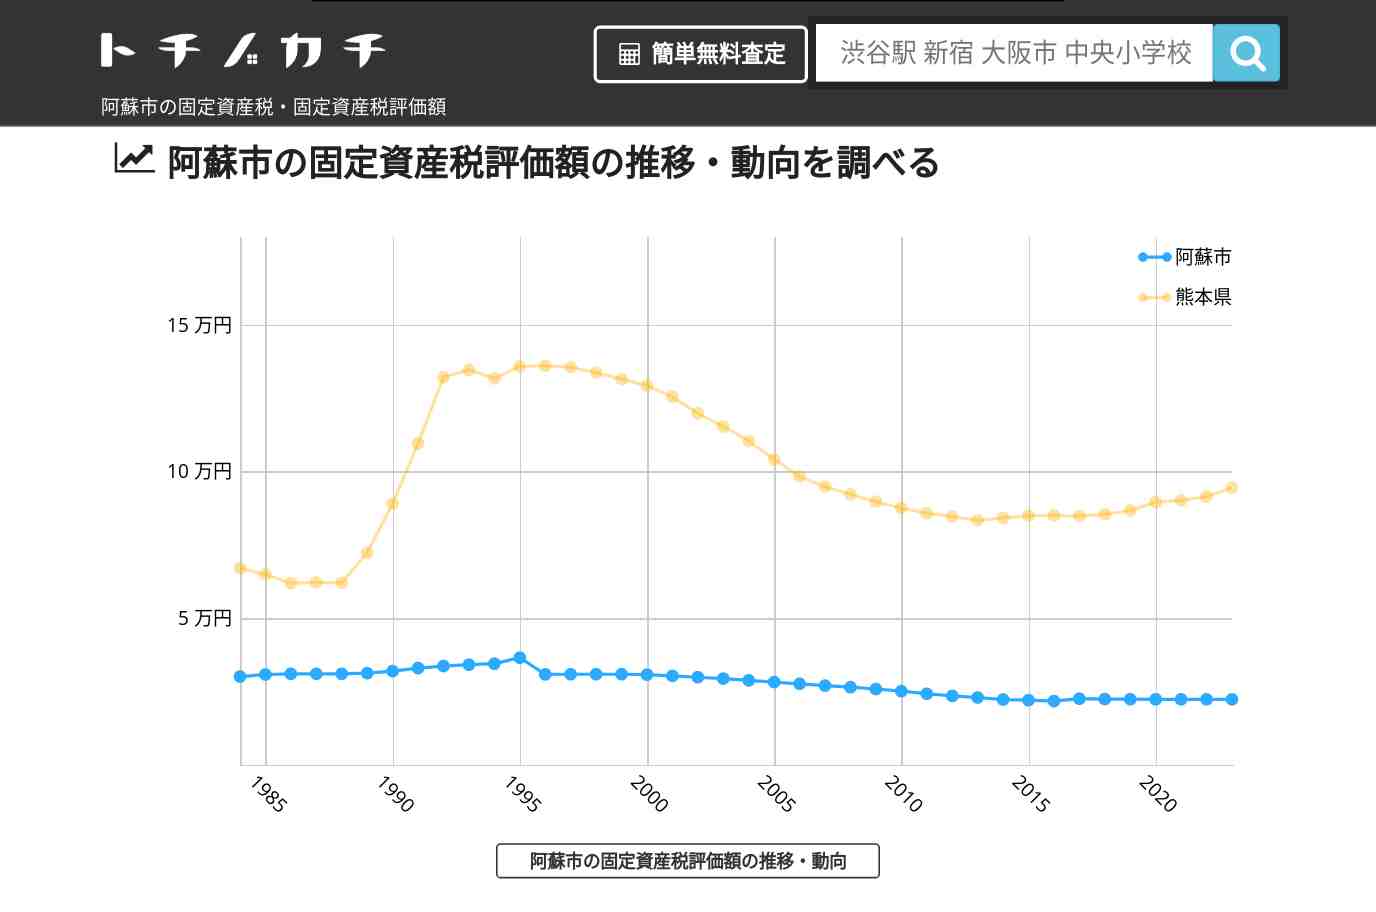 波野小学校(熊本県 阿蘇市)周辺の固定資産税・固定資産税評価額 | トチノカチ